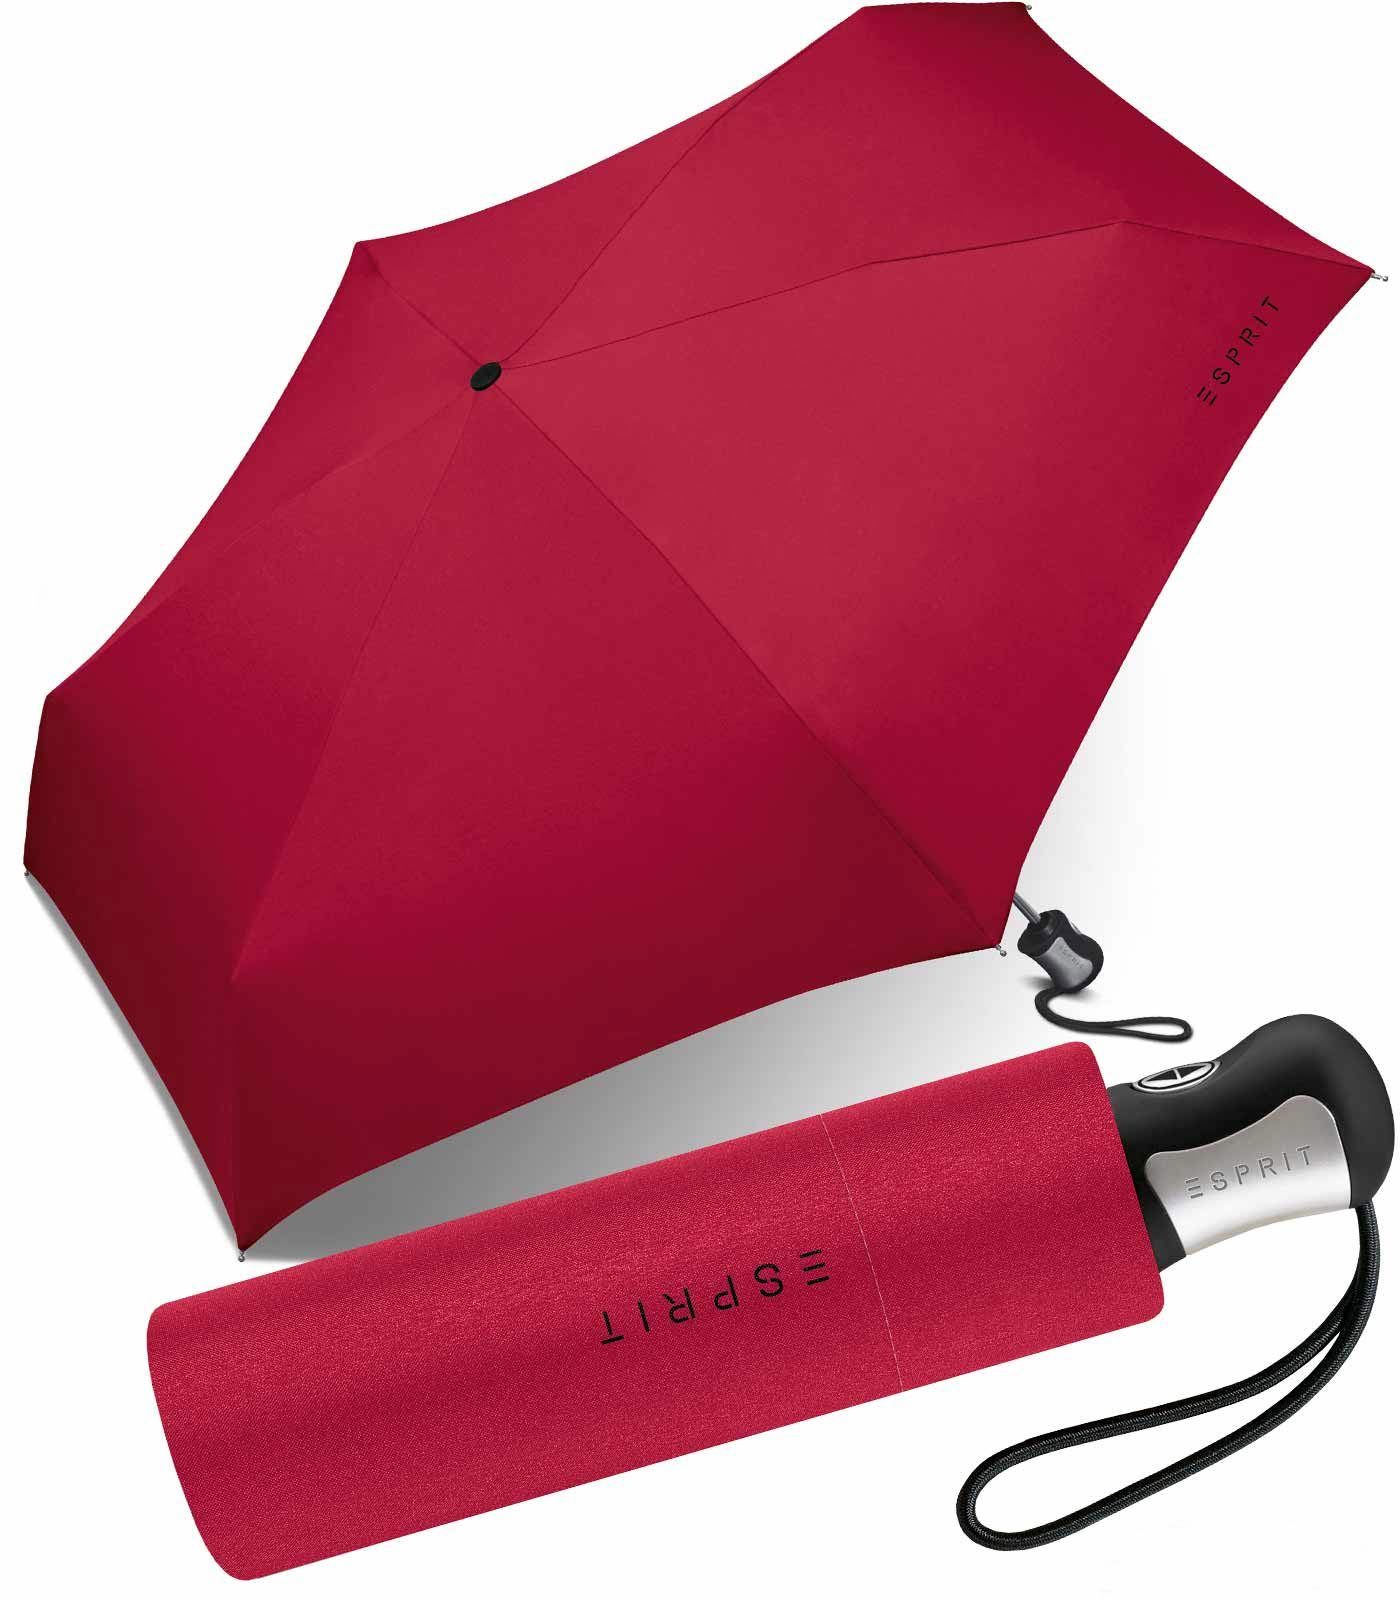 Esprit Langregenschirm schöner, kleiner Schirm für Damen Auf-Zu Automatik, in kräftigen, klassischen Farben - rot